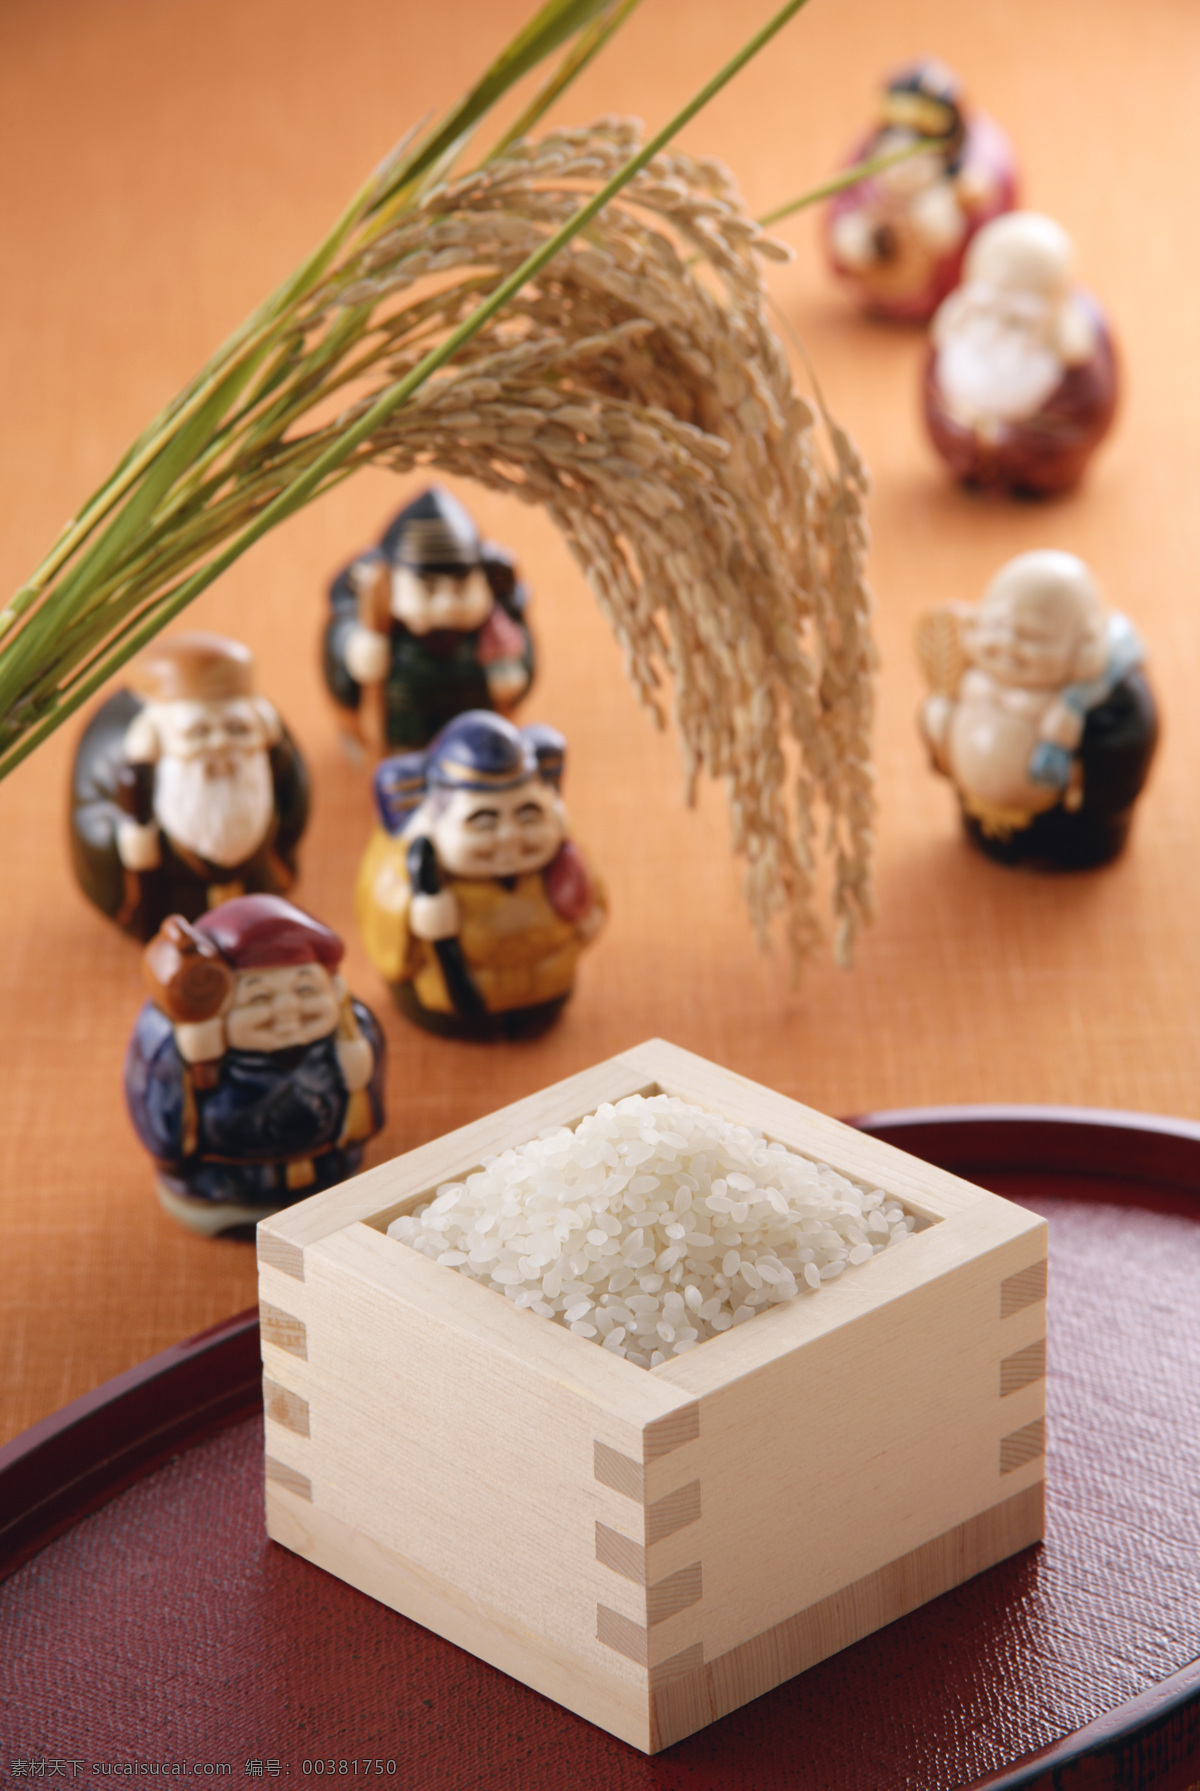 大米 粳米 粮食 稻谷 谷物 五谷杂粮 糯米 食物原料 餐饮美食